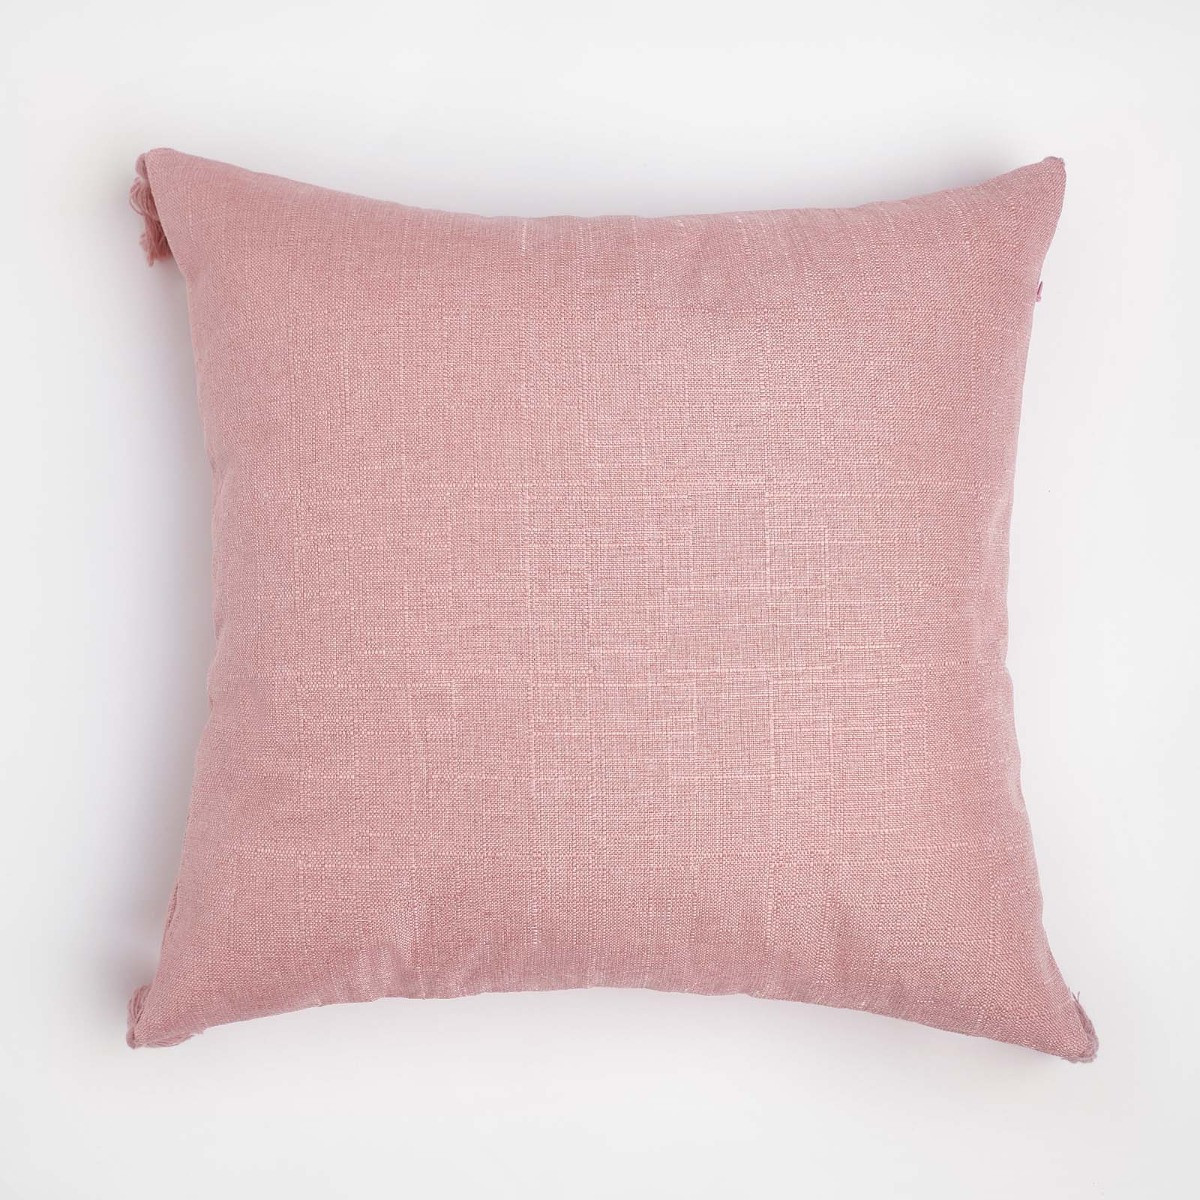 Dreamscene Tassel Cushion Covers - Blush>